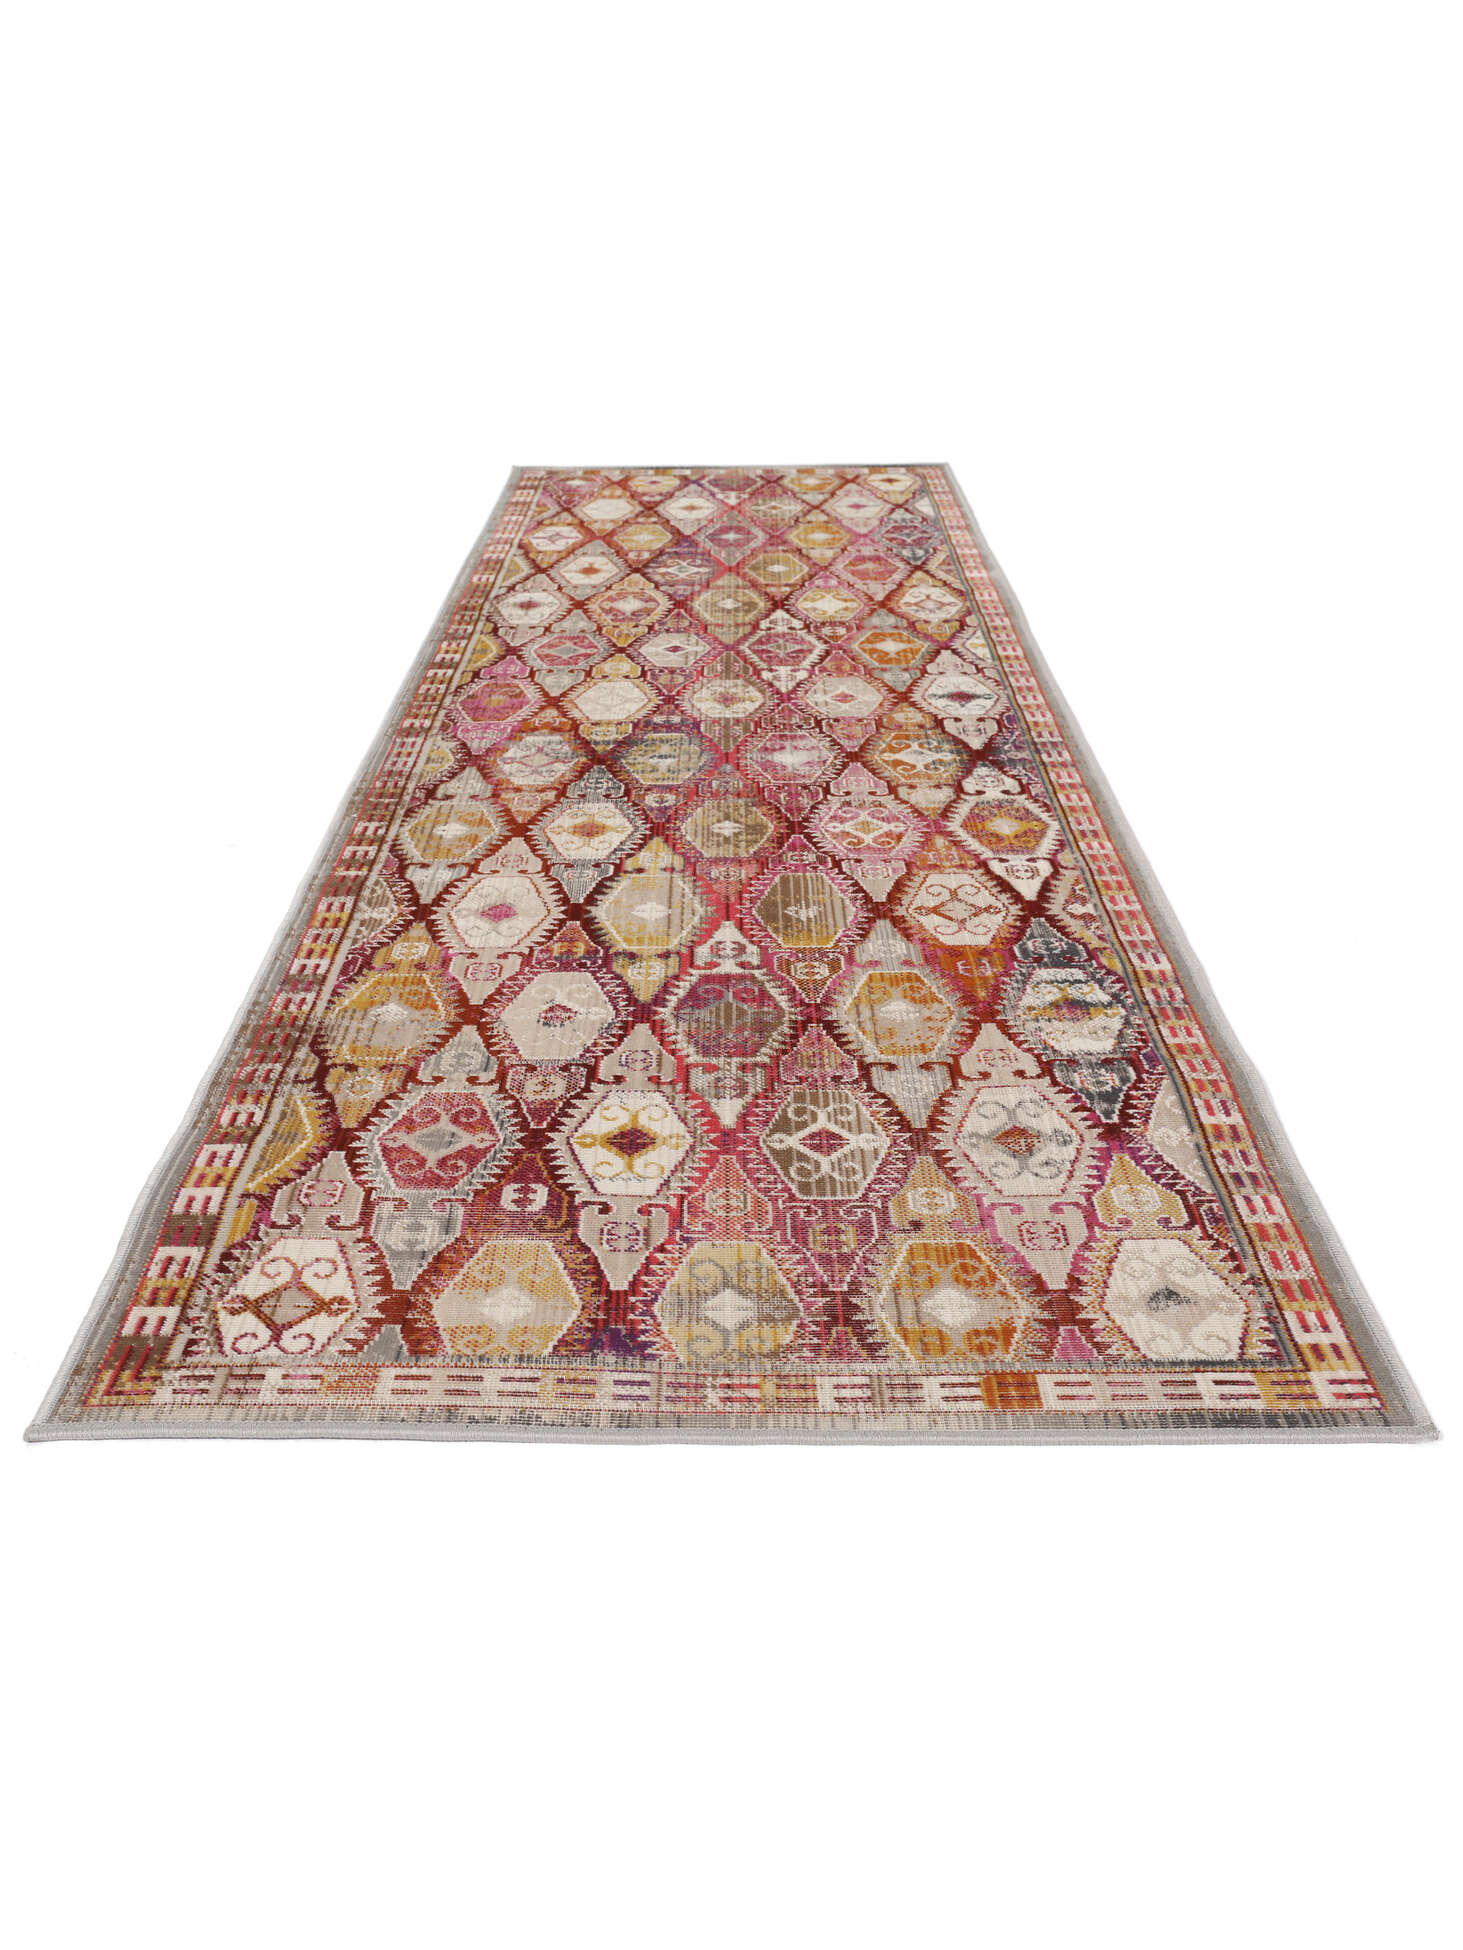 Teppich Baumwolle rot 80 x 150 cm mit Quasten NIGDE 